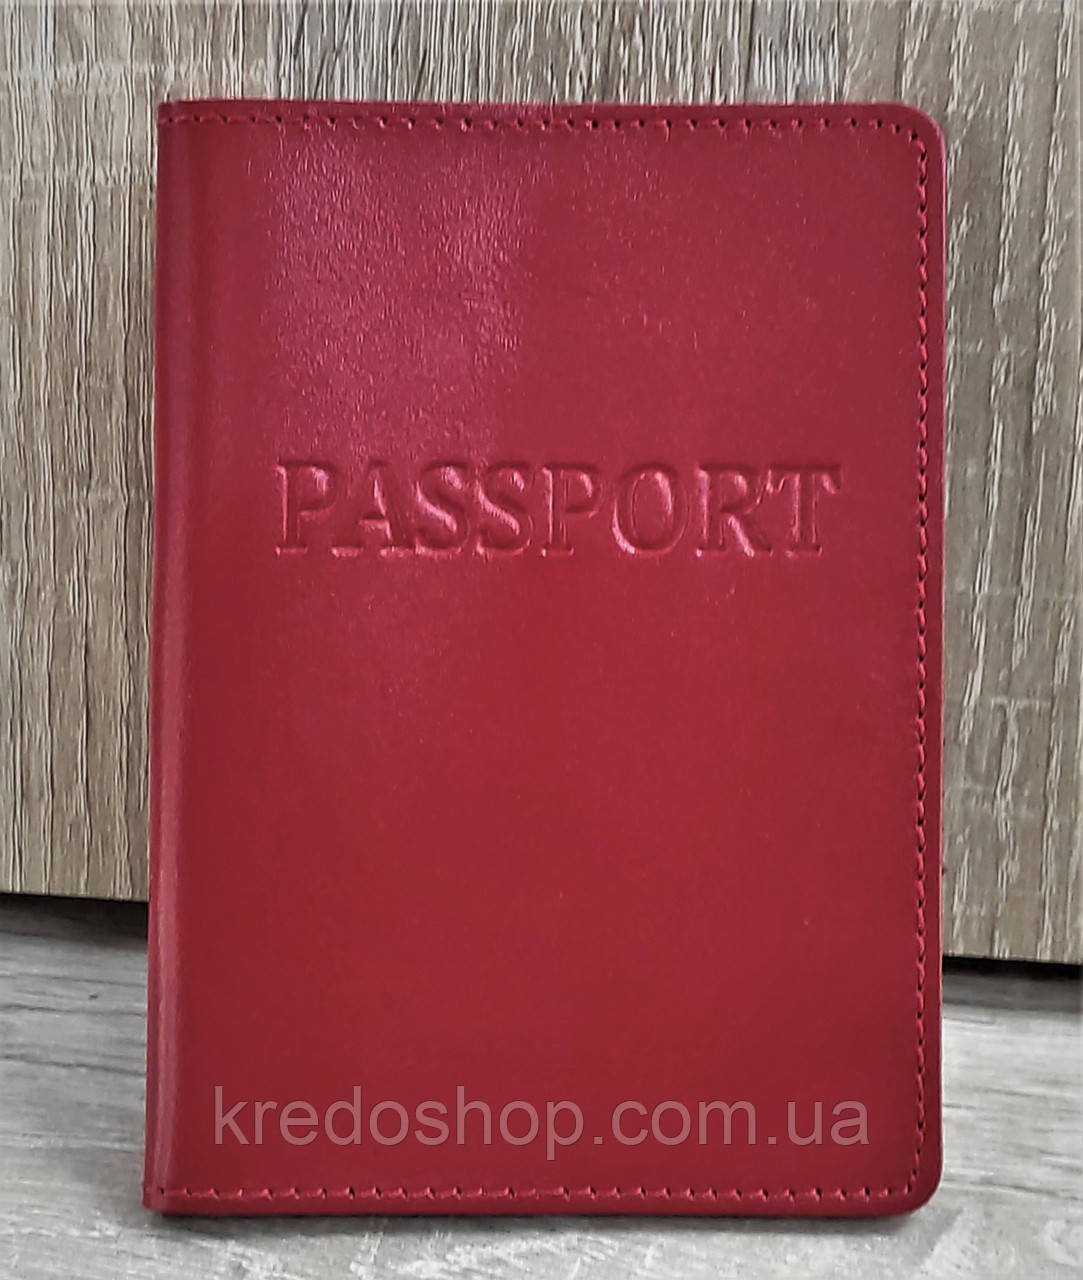 Обложка для паспорта красная 13*9*1 (Украина)